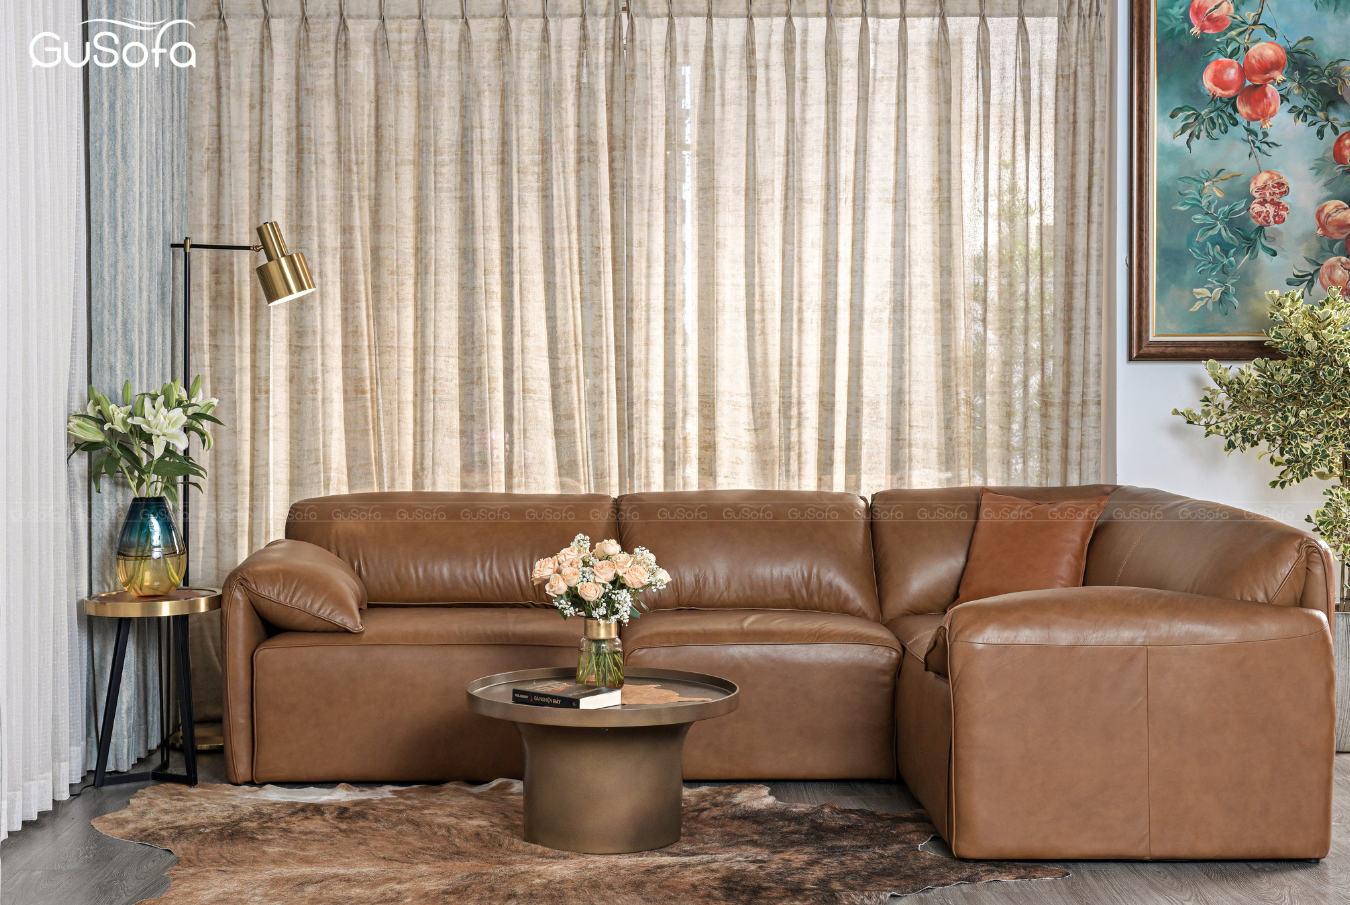  Ghế Sofa góc Gurelax size lớn 2,95x1,9 (m) Da bò Brazil 80% 